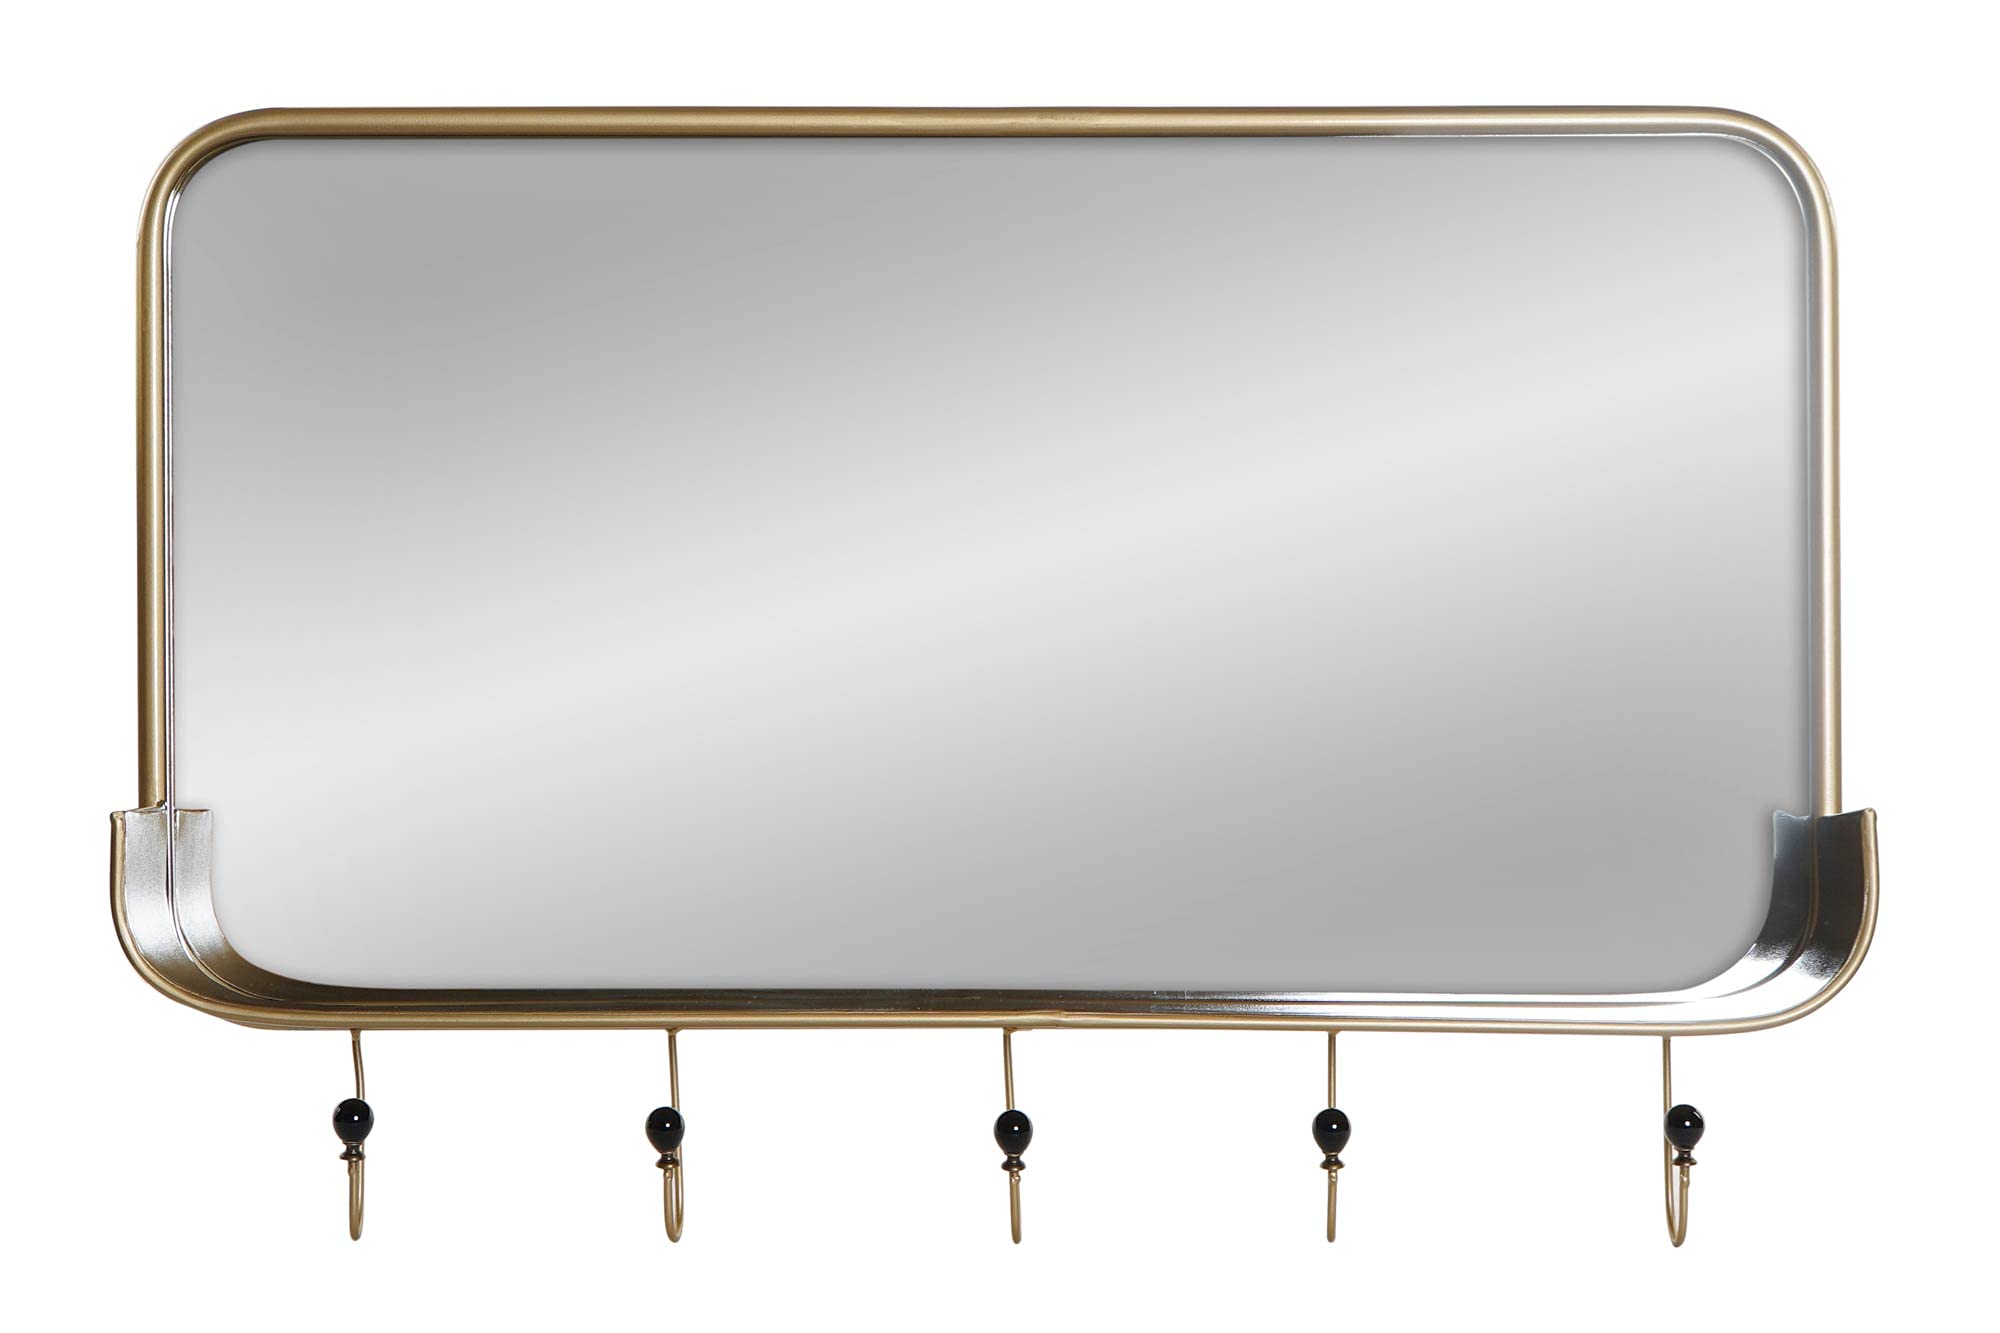 DT Spiegel aus Metall, verspiegelt, goldfarben, 92,5 x 17,5 x 63,5 cm (ES-171141)